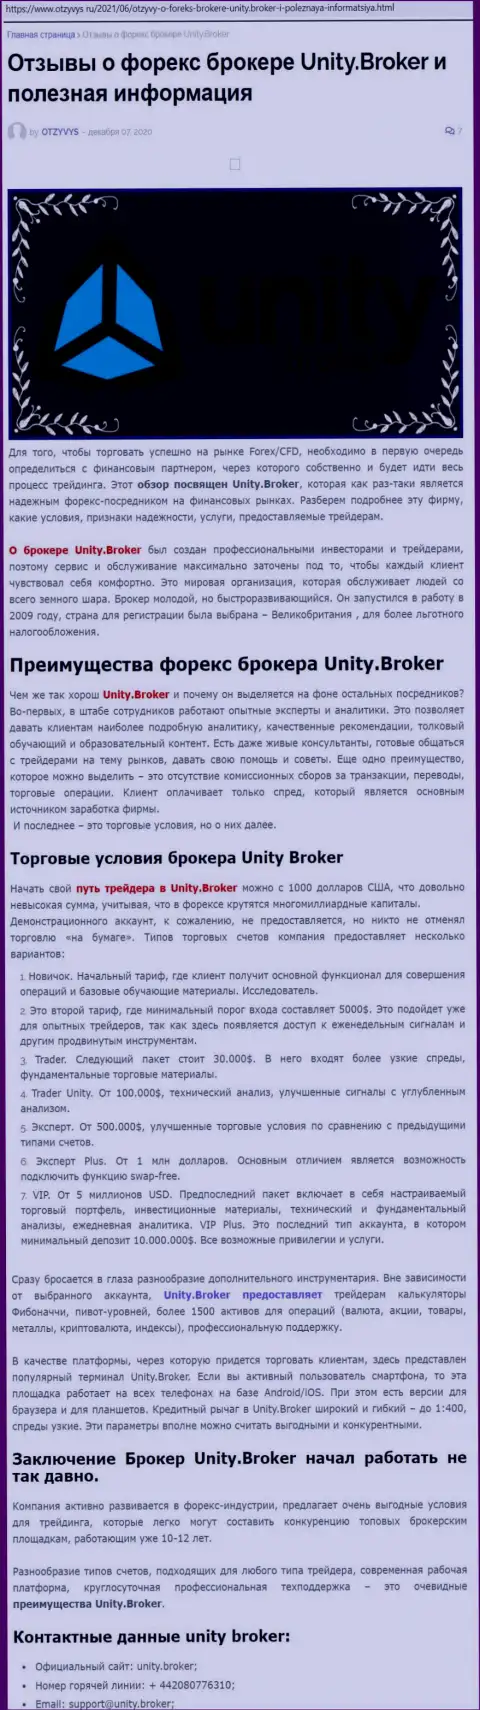 Статья о Форекс-брокерской компании Unity Broker на сайте отзивис ру